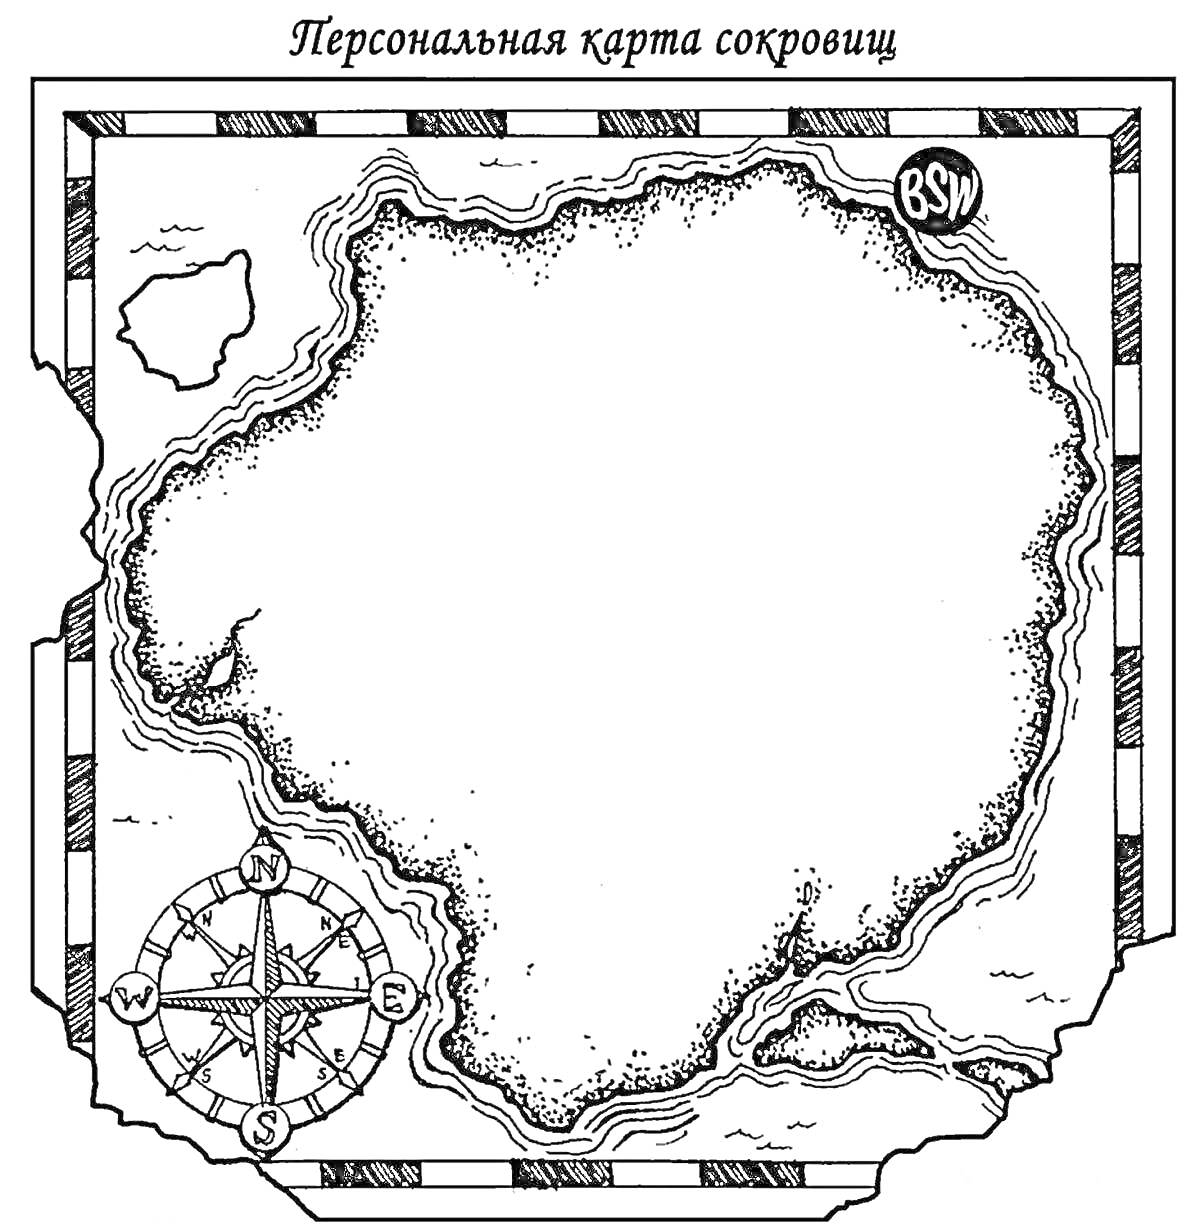 Раскраска Персональная карта сокровищ с компасом, островами и отметкой BSW